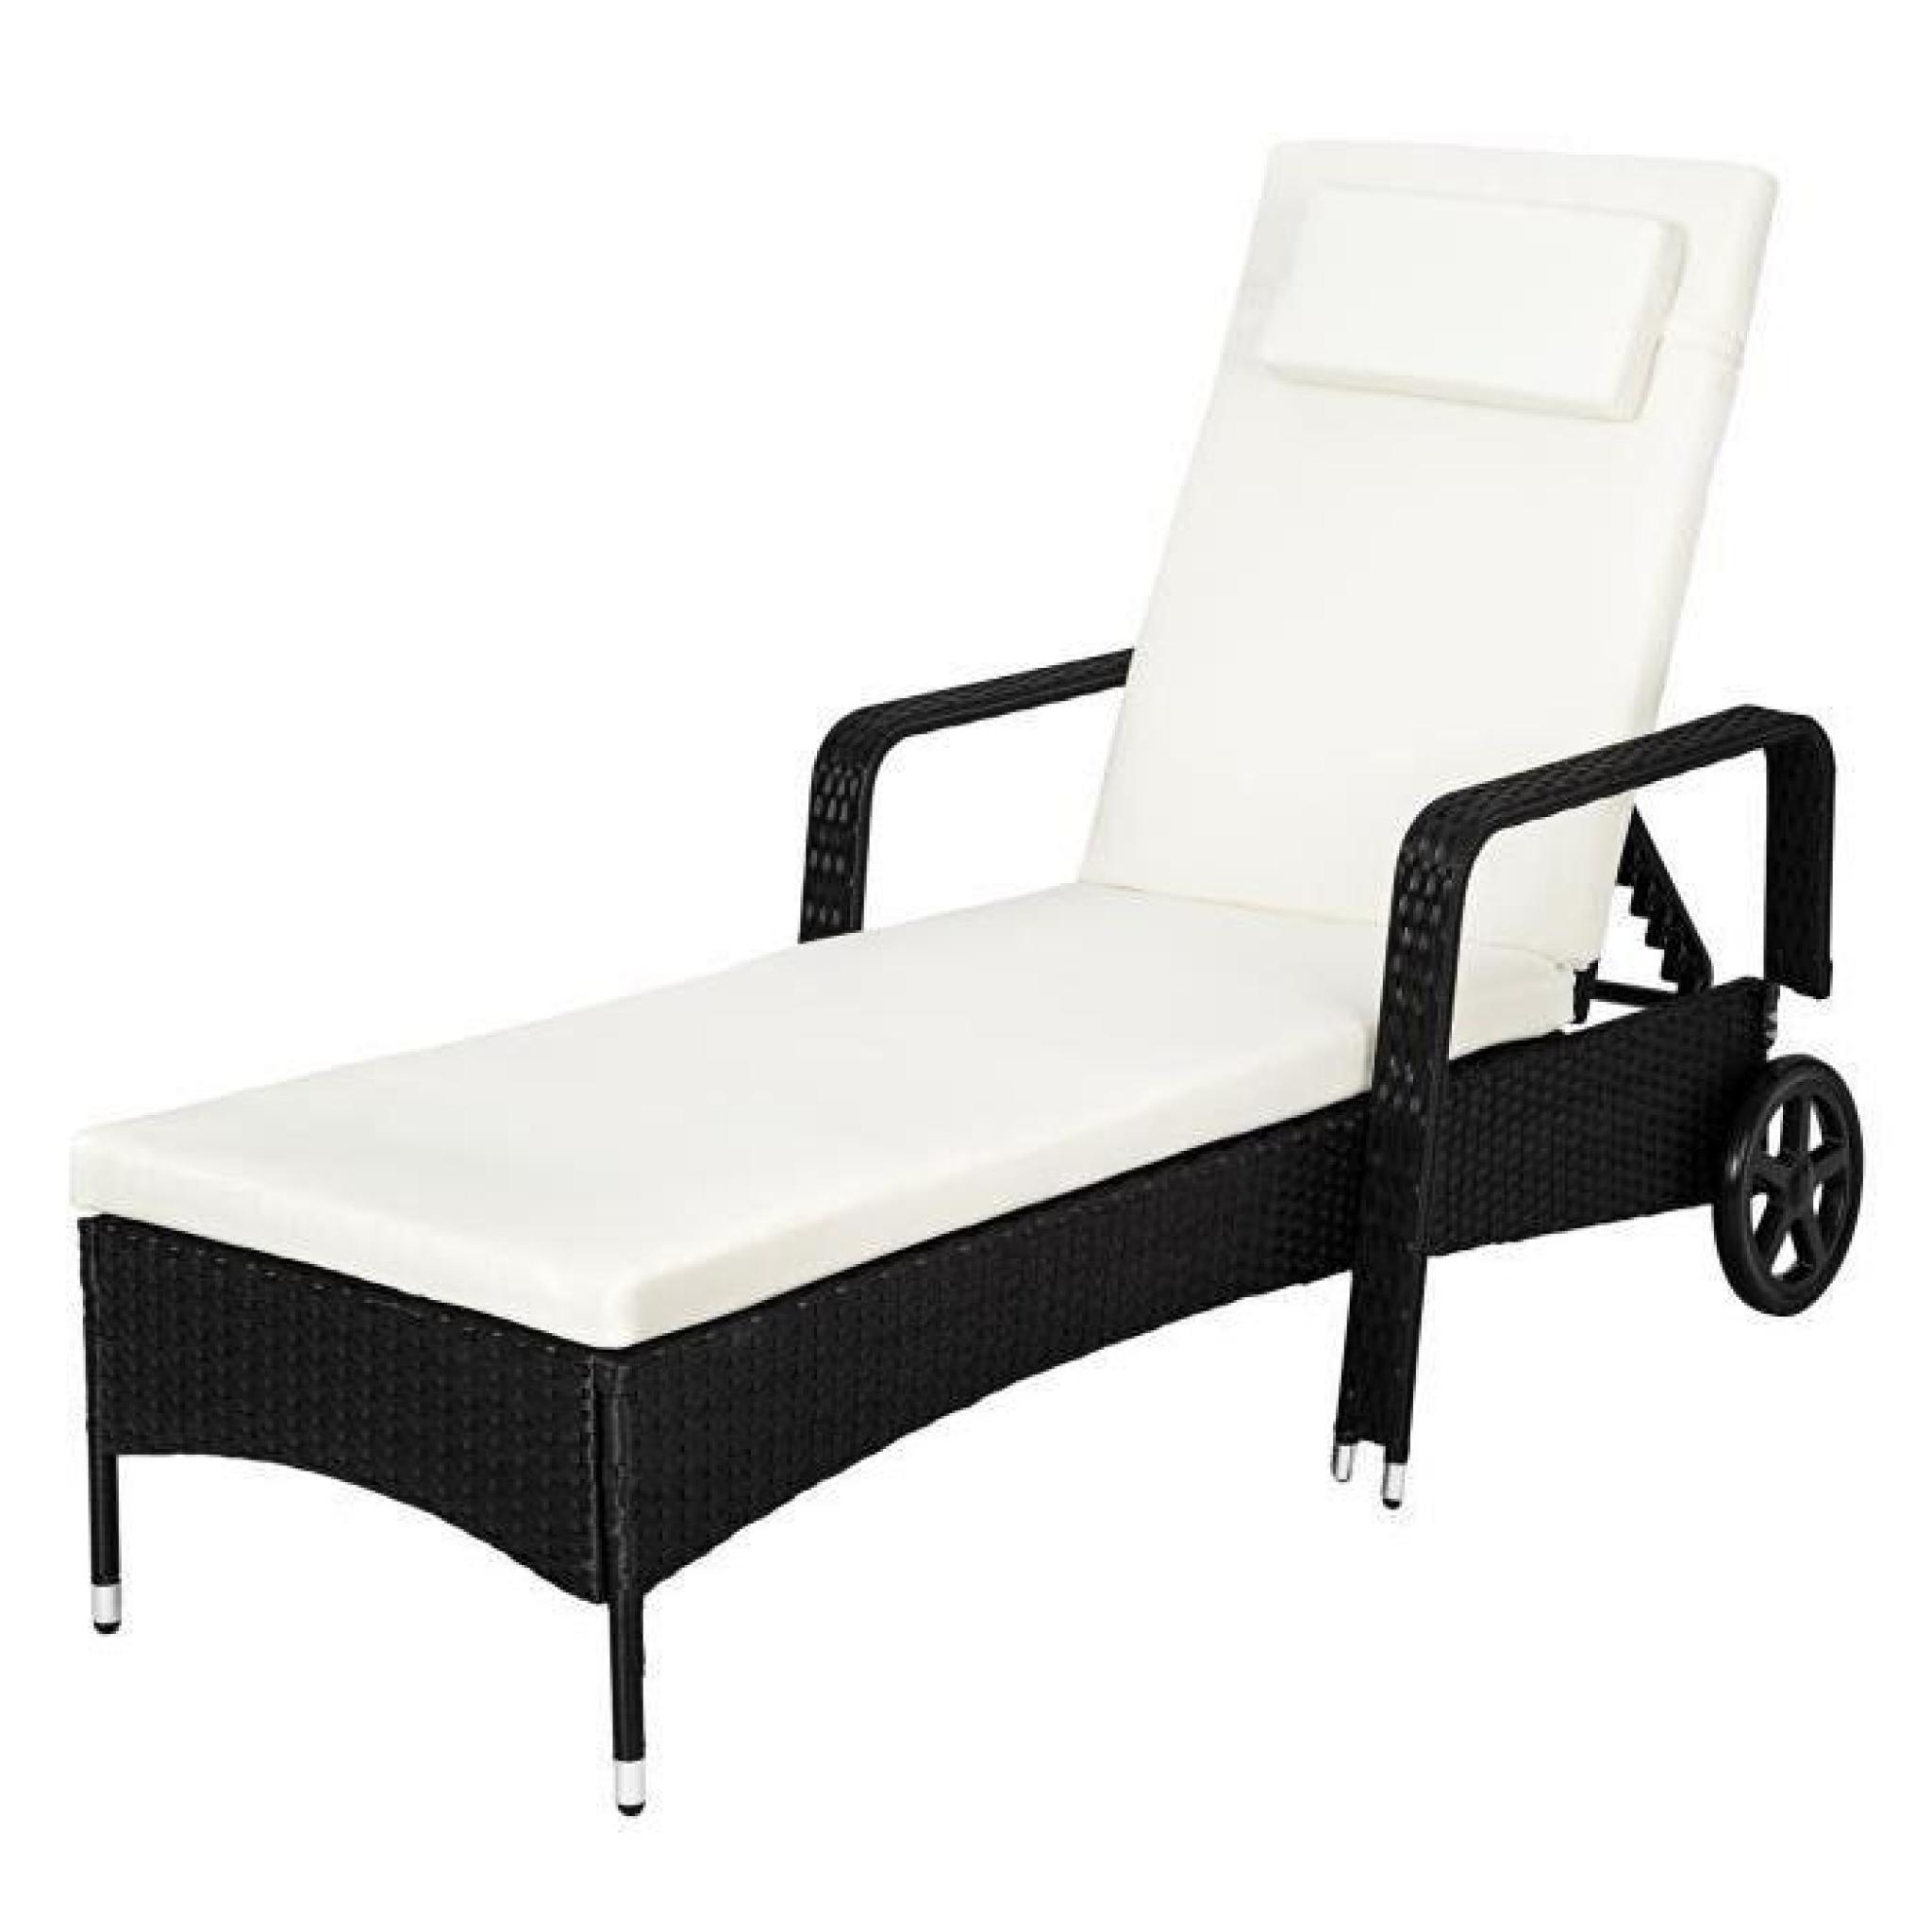 Chaise longue, Transat, Bain de soleil en Résine Tressée Poly Rotin - 1 Place - 200 cm x 70 cm x 33 cm - Noir TECTAKE